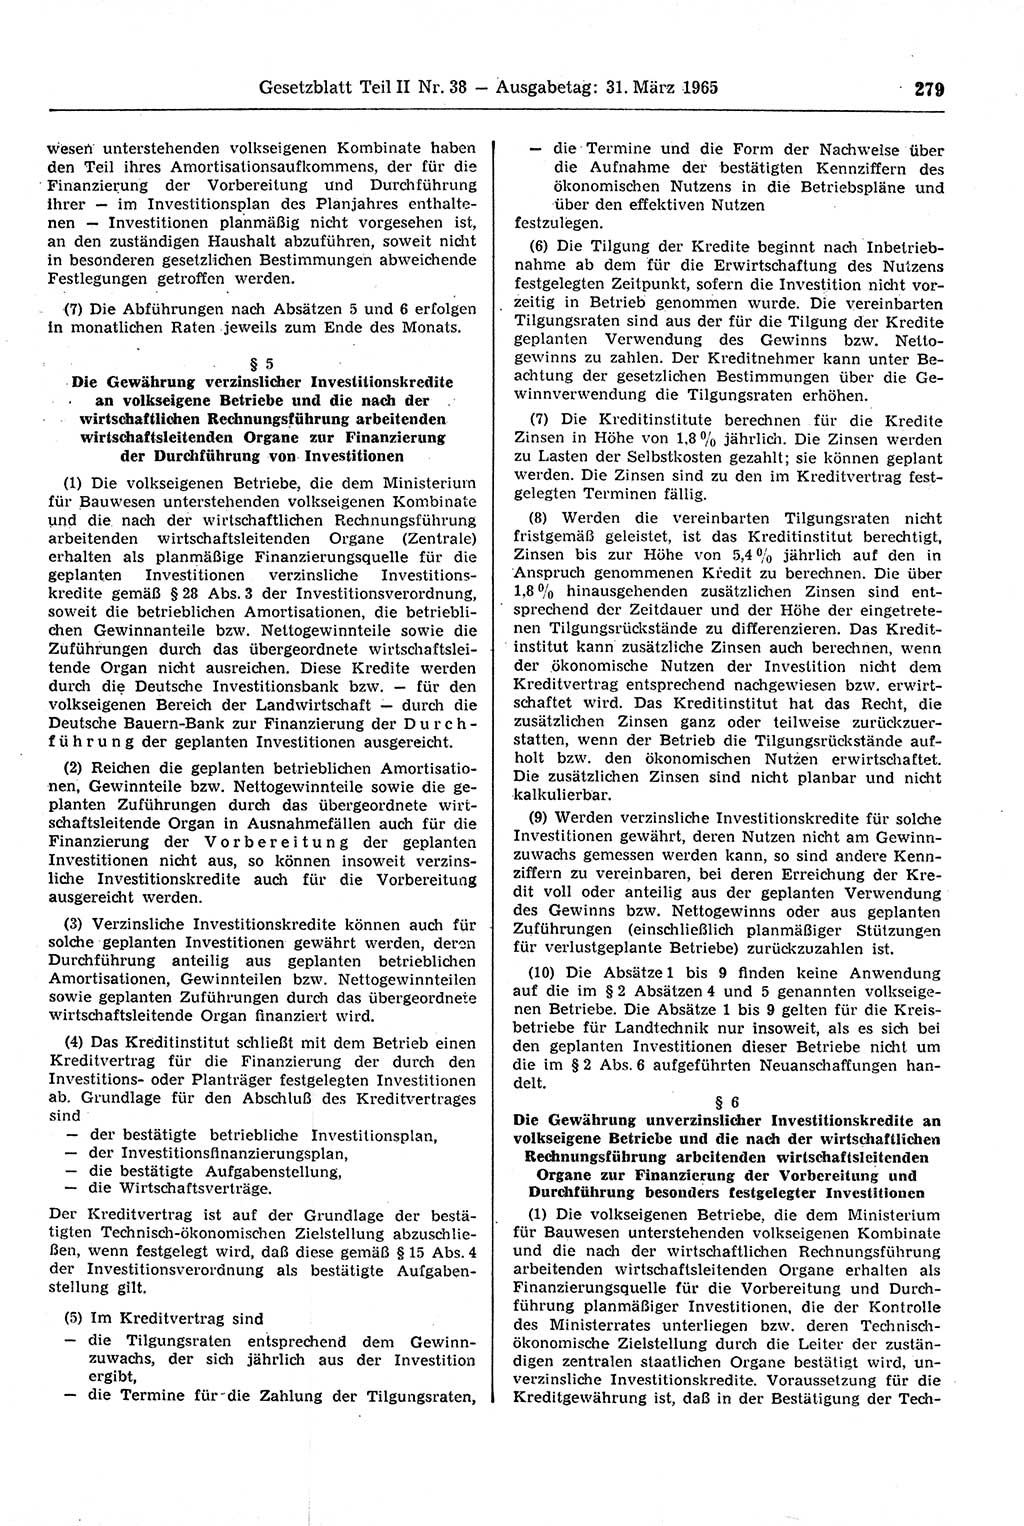 Gesetzblatt (GBl.) der Deutschen Demokratischen Republik (DDR) Teil ⅠⅠ 1965, Seite 279 (GBl. DDR ⅠⅠ 1965, S. 279)